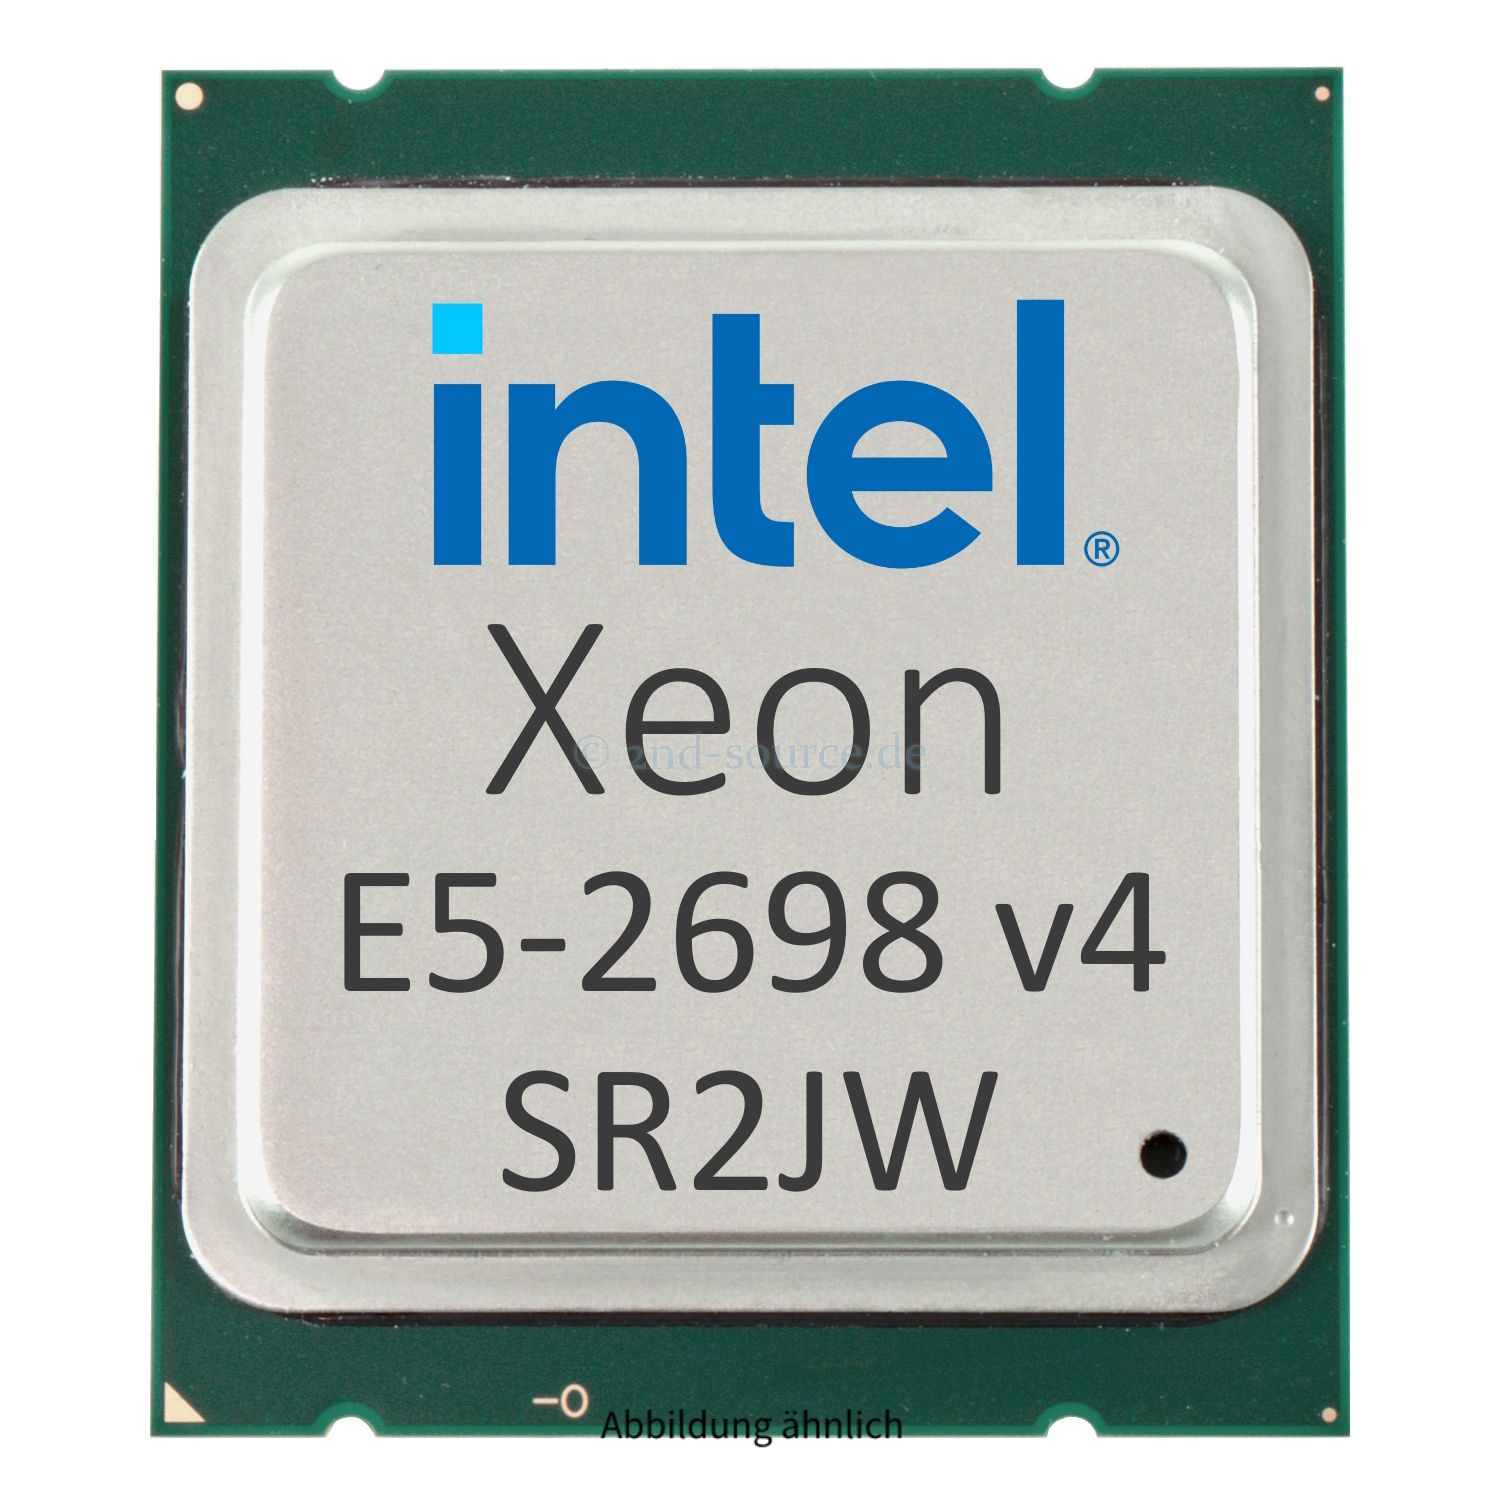 Intel Xeon E5-2698 v4 2.20GHz 50MB 20-Core CPU 135W SR2JW CM8066002024000